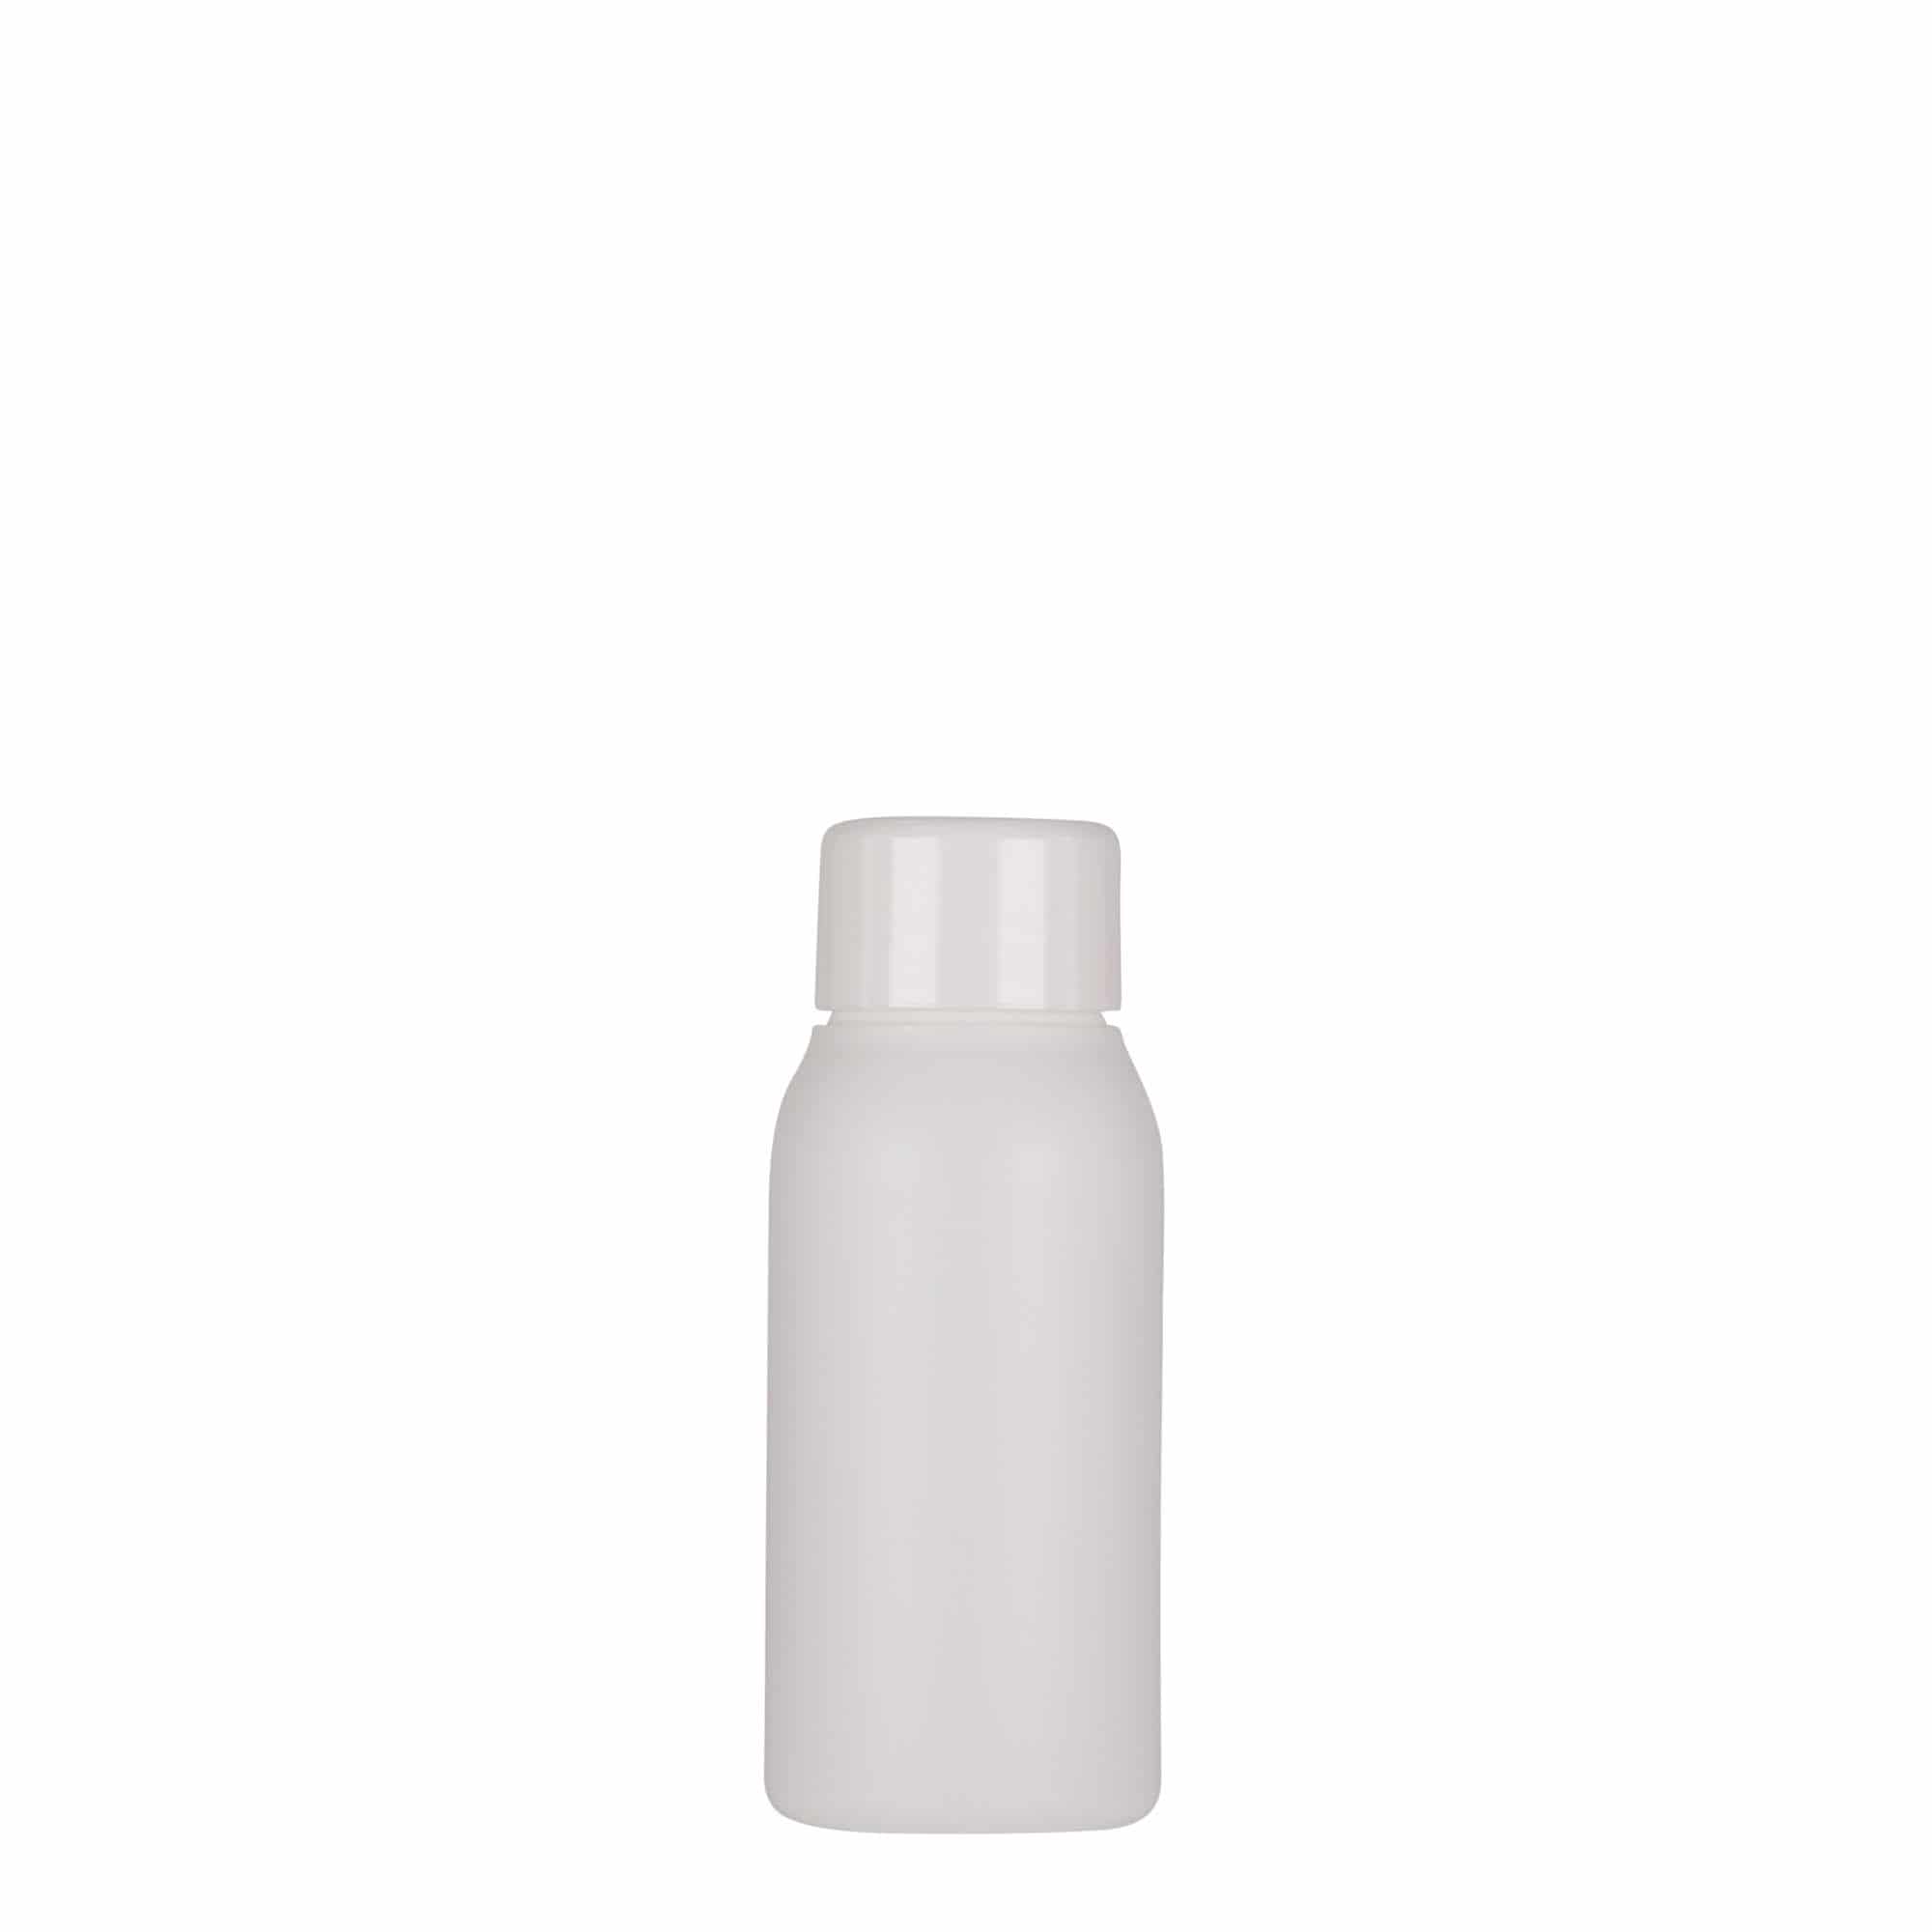 50 ml plastic bottle 'Tuffy', HDPE, white, closure: GPI 24/410